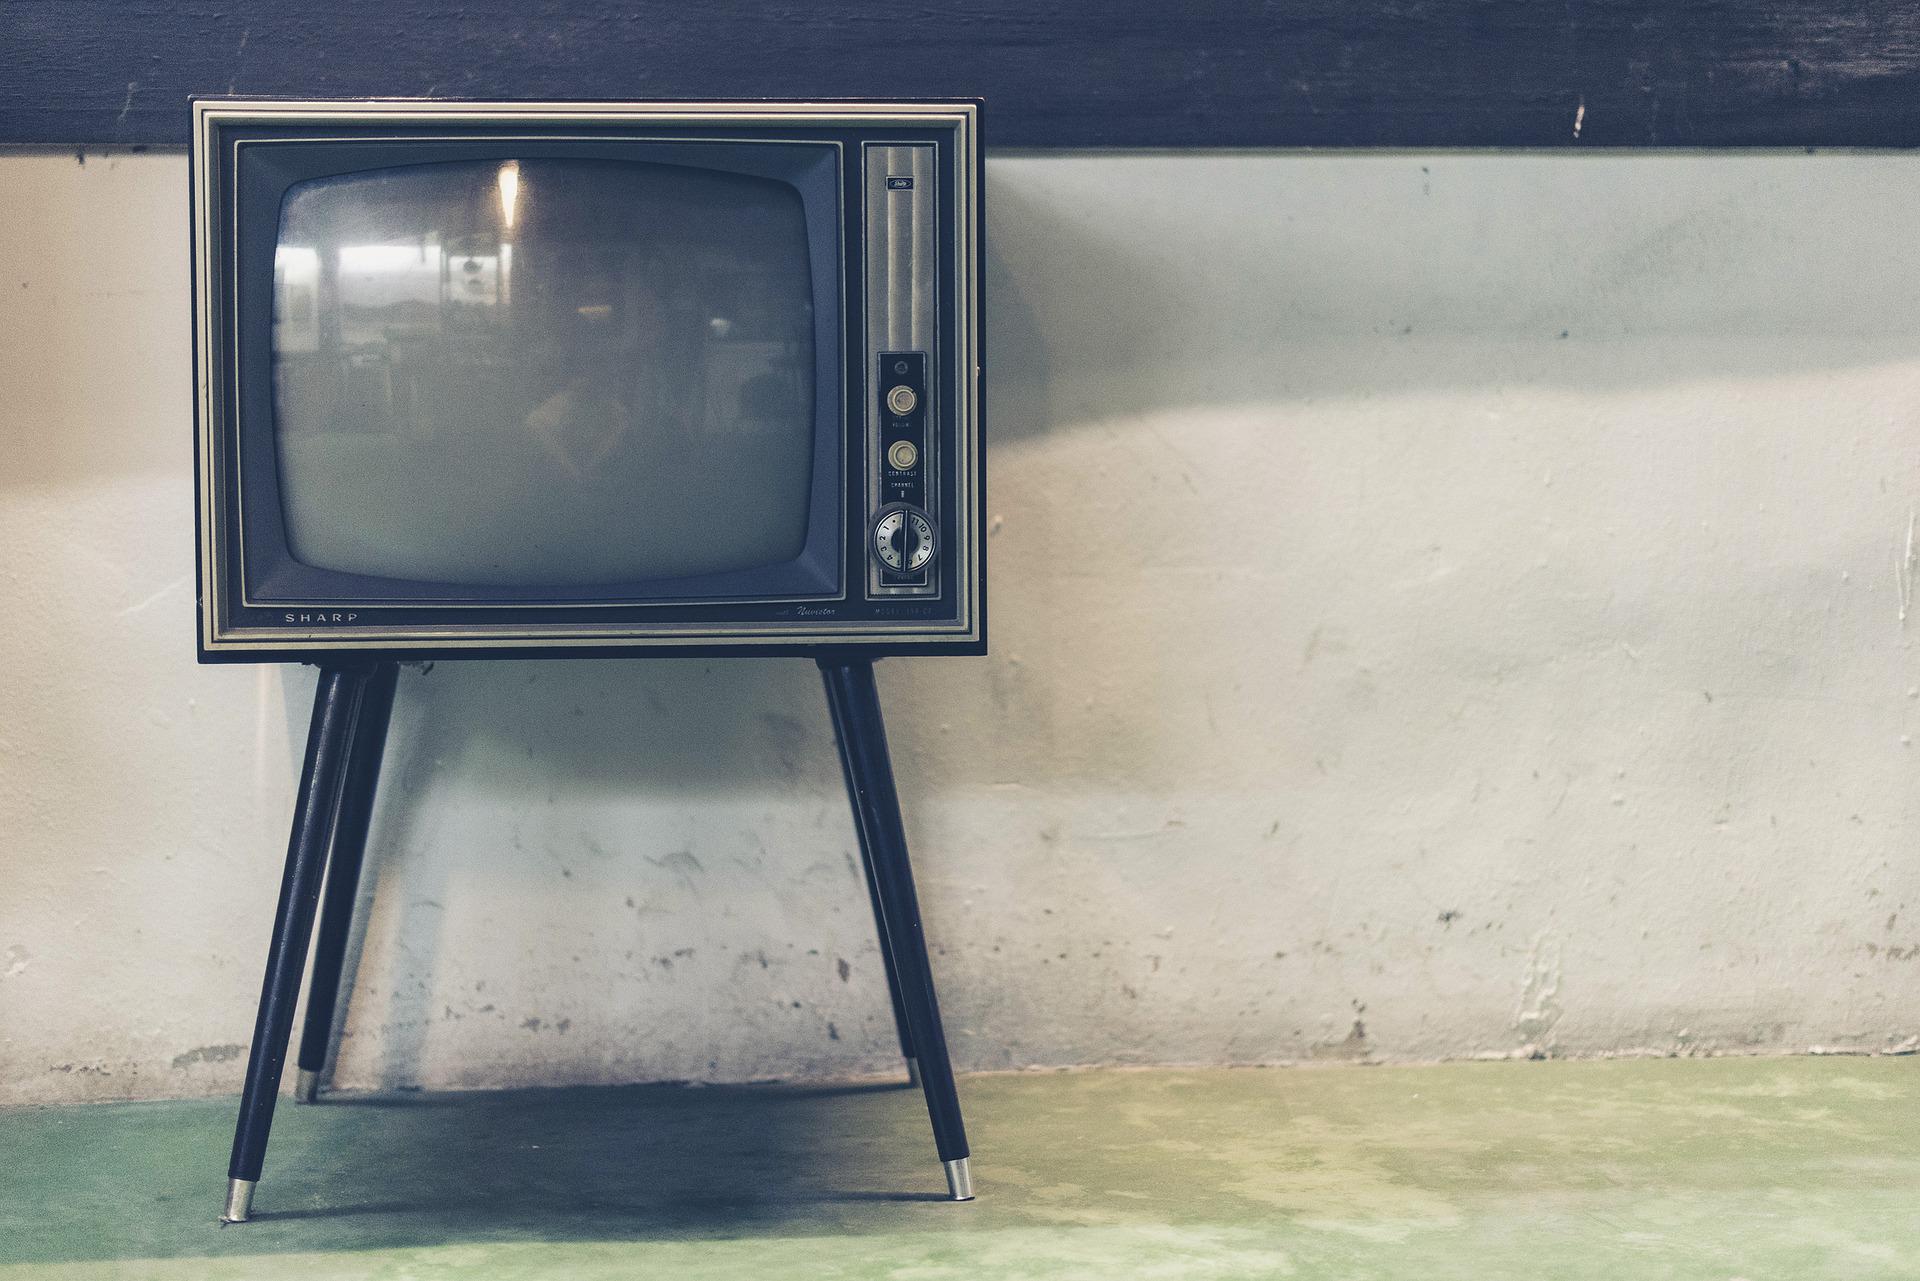 Транспортировка телевизора и его особенности